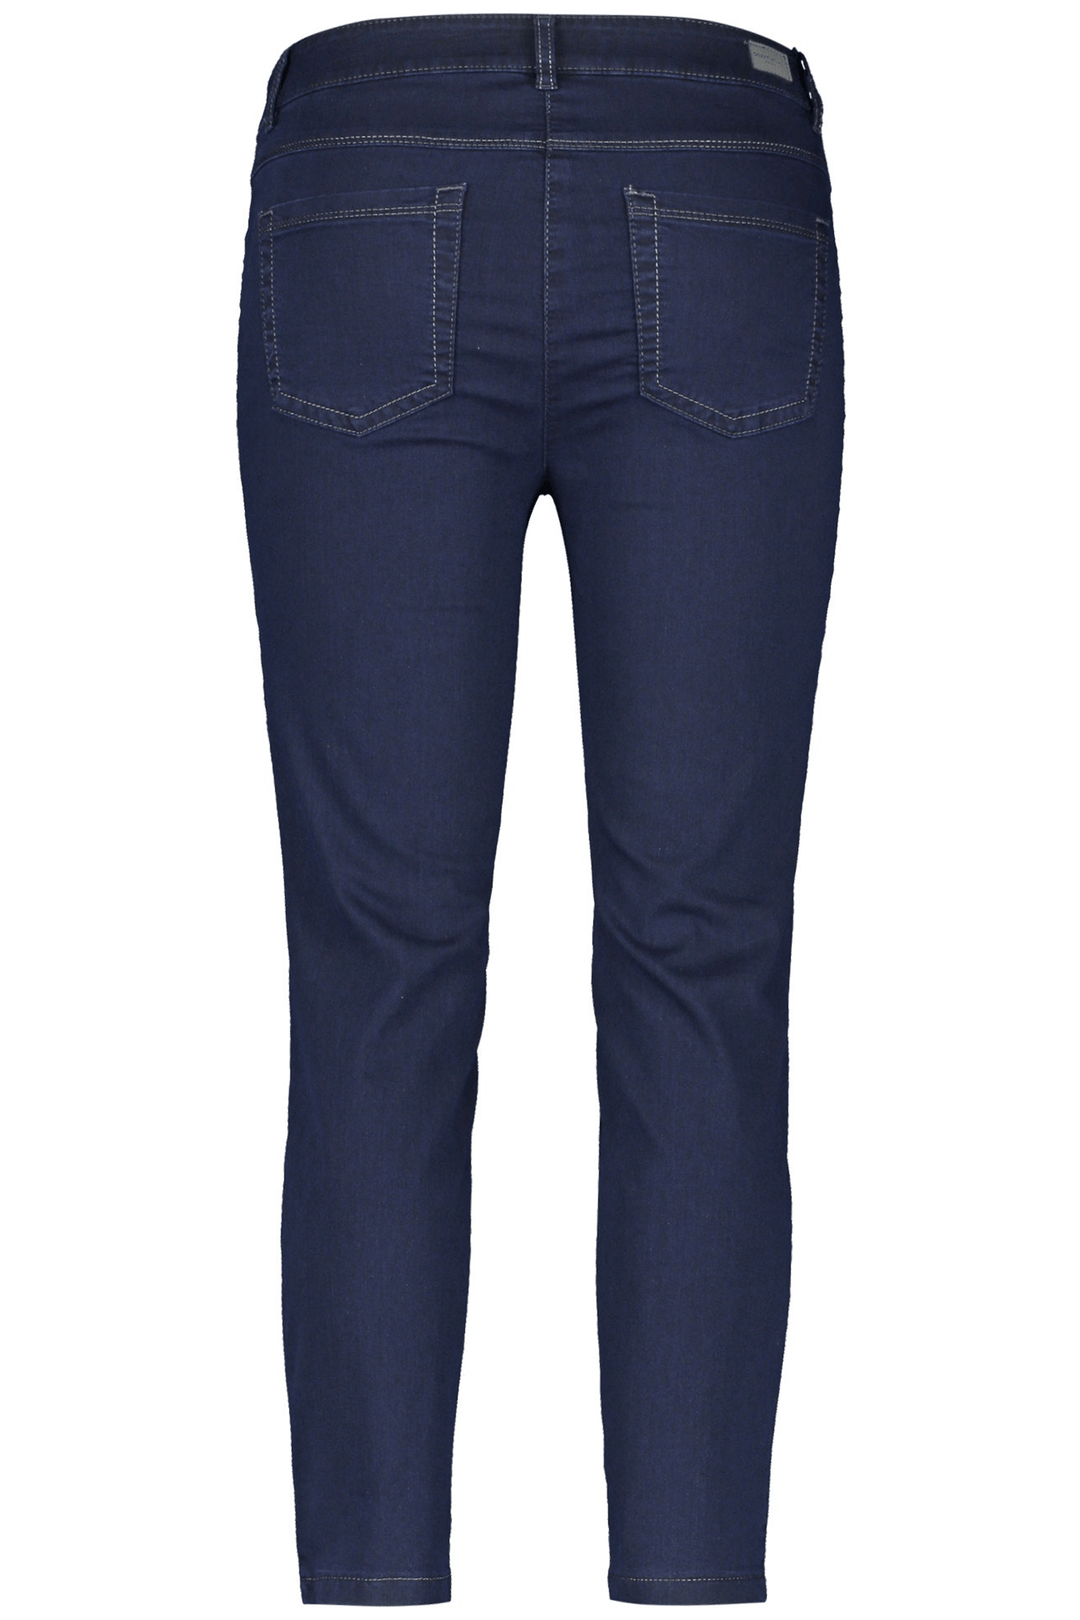 Gerry Weber 92335-67813 86800 Dark Blue Denim Jeans - Shirley Allum Boutique